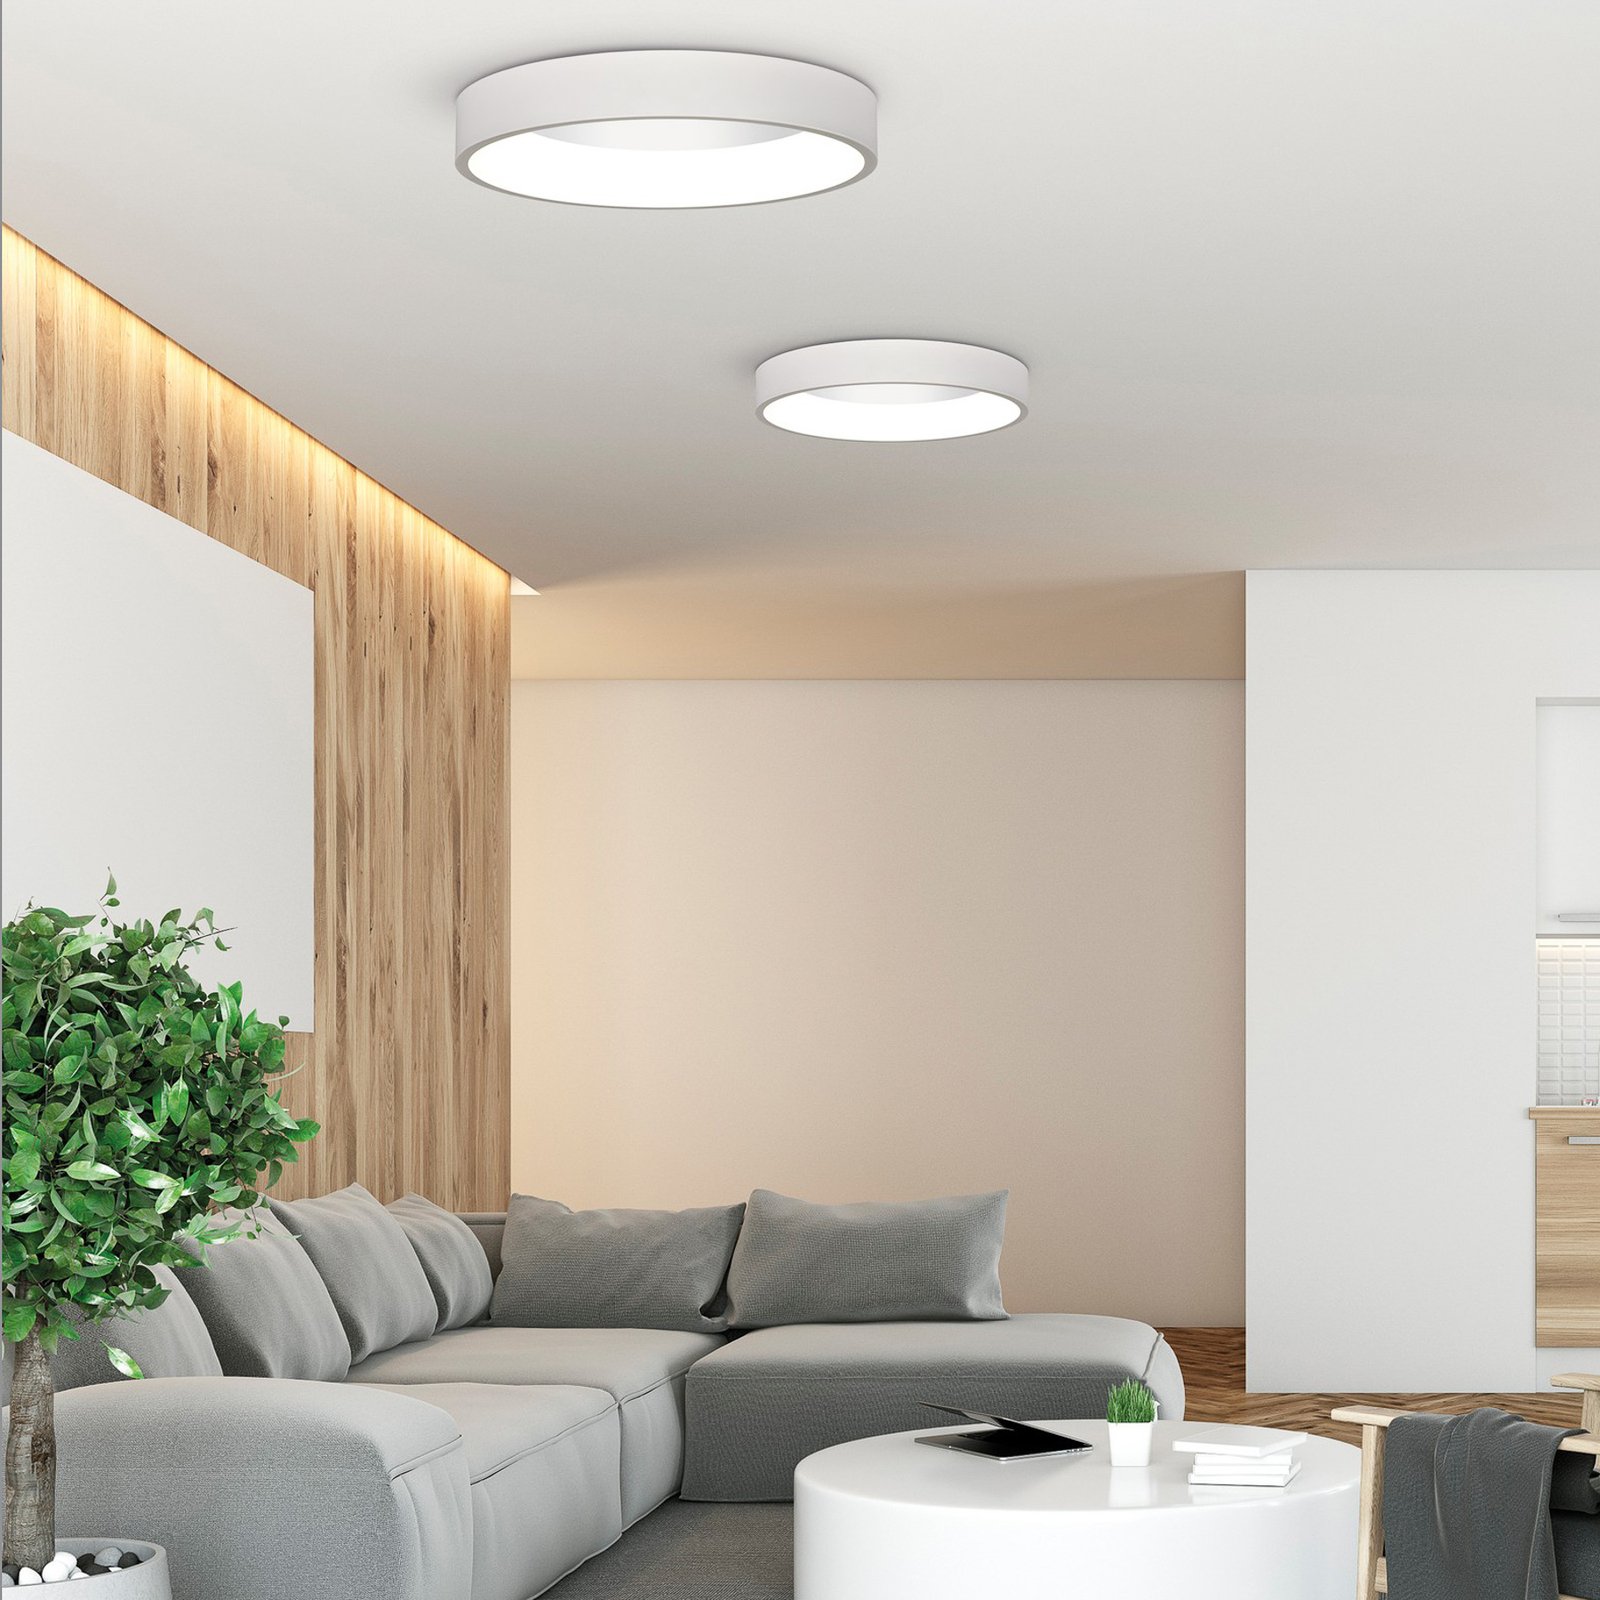 Φωτιστικό οροφής Dilga LED, Ø 60 cm, Casambi, 48 W, λευκό